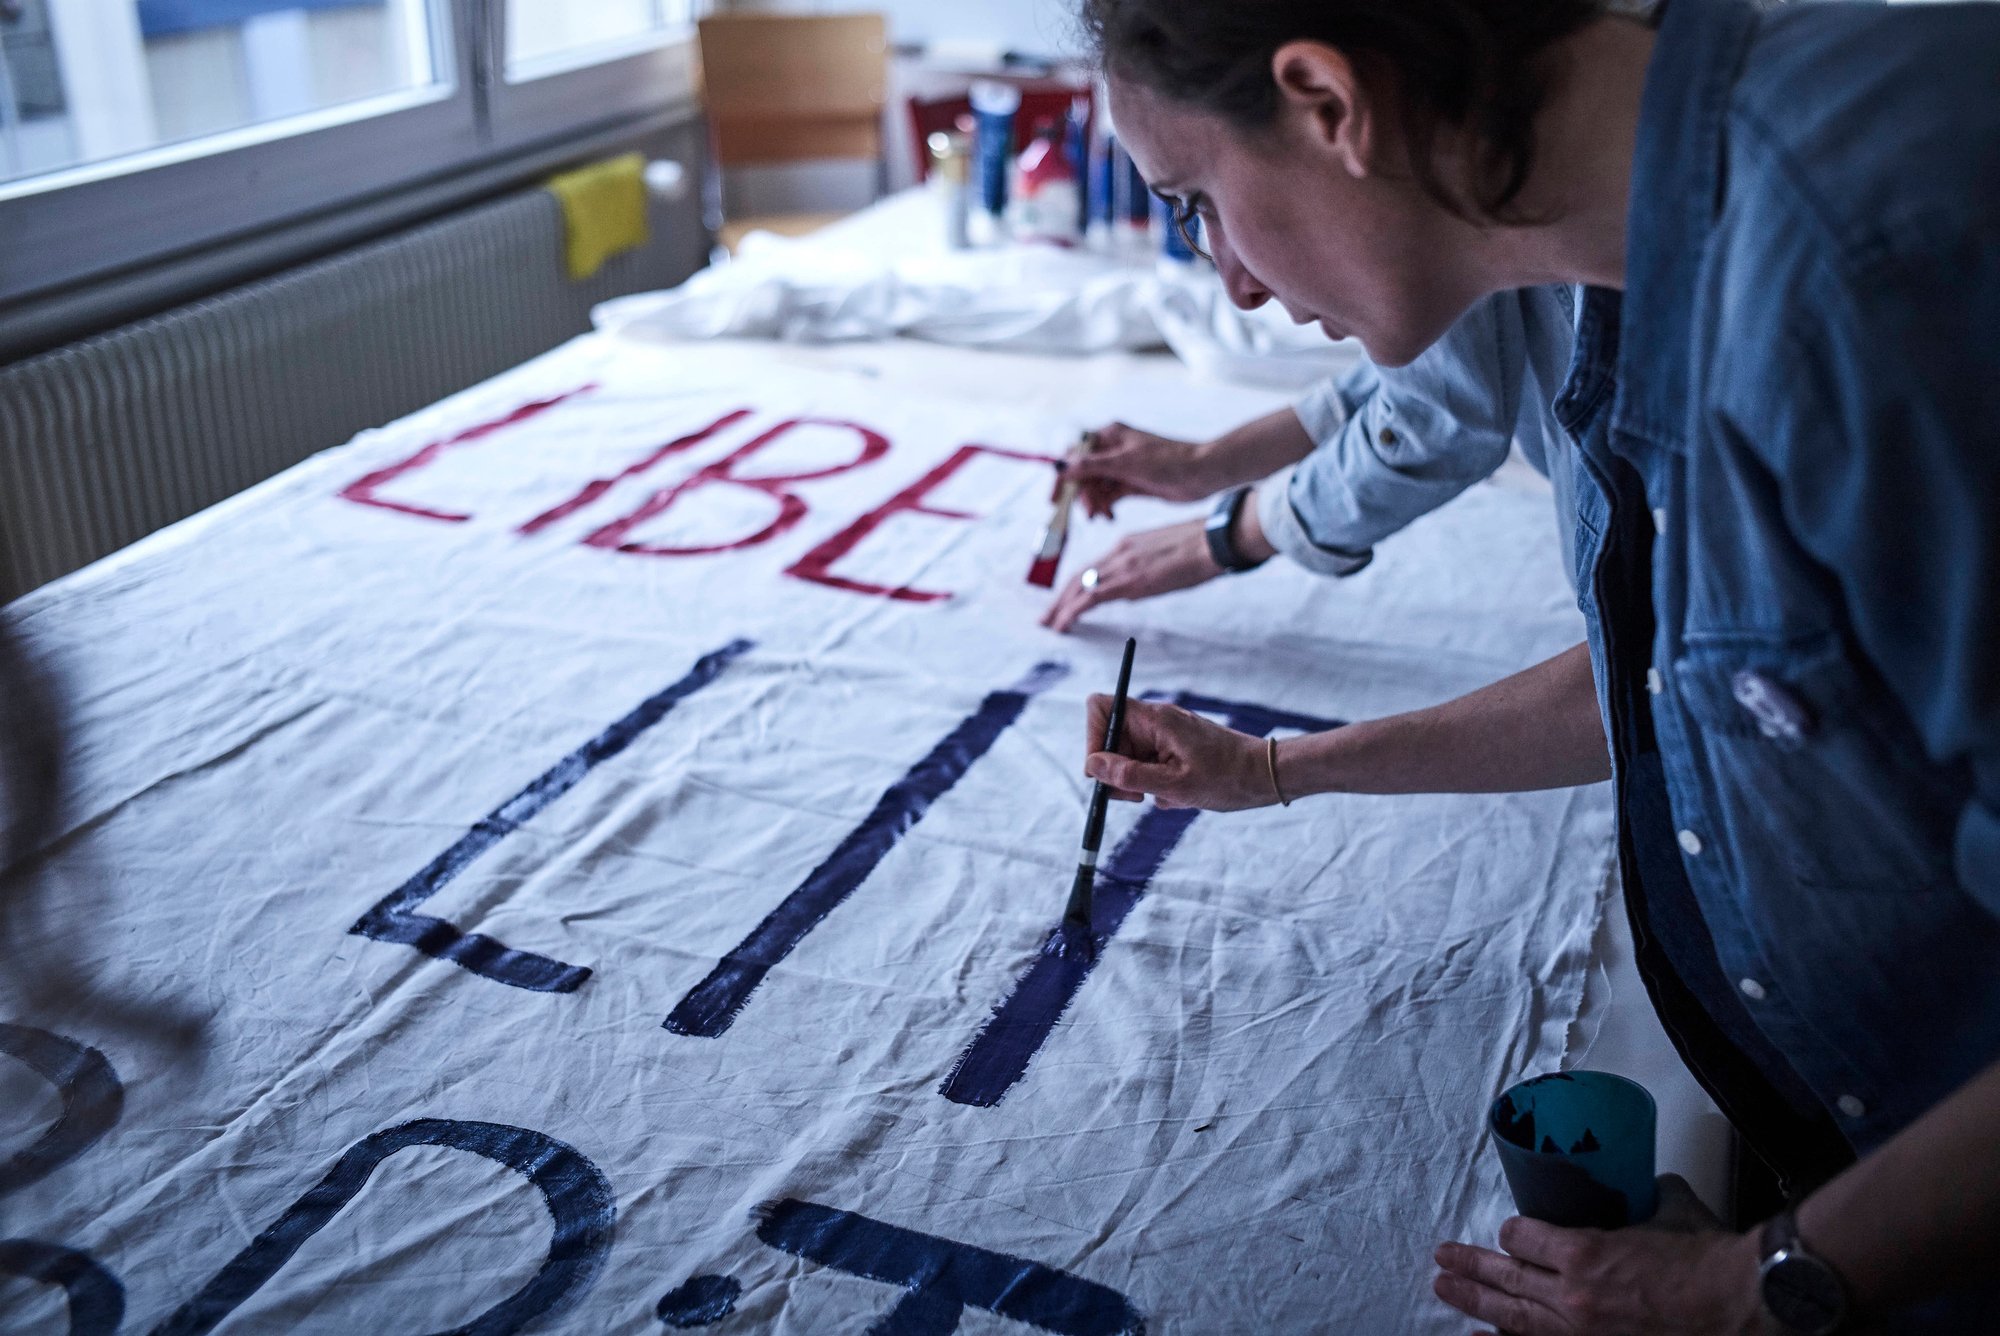 Dimanche dernier, les membres du Collectif Femmes* Valais ont confectionné la première banderole du rassemblement du 14 juin. «Liberté, égalité, sororité», trois mots pour un slogan qui sera brandi dans les rues de la capitale.